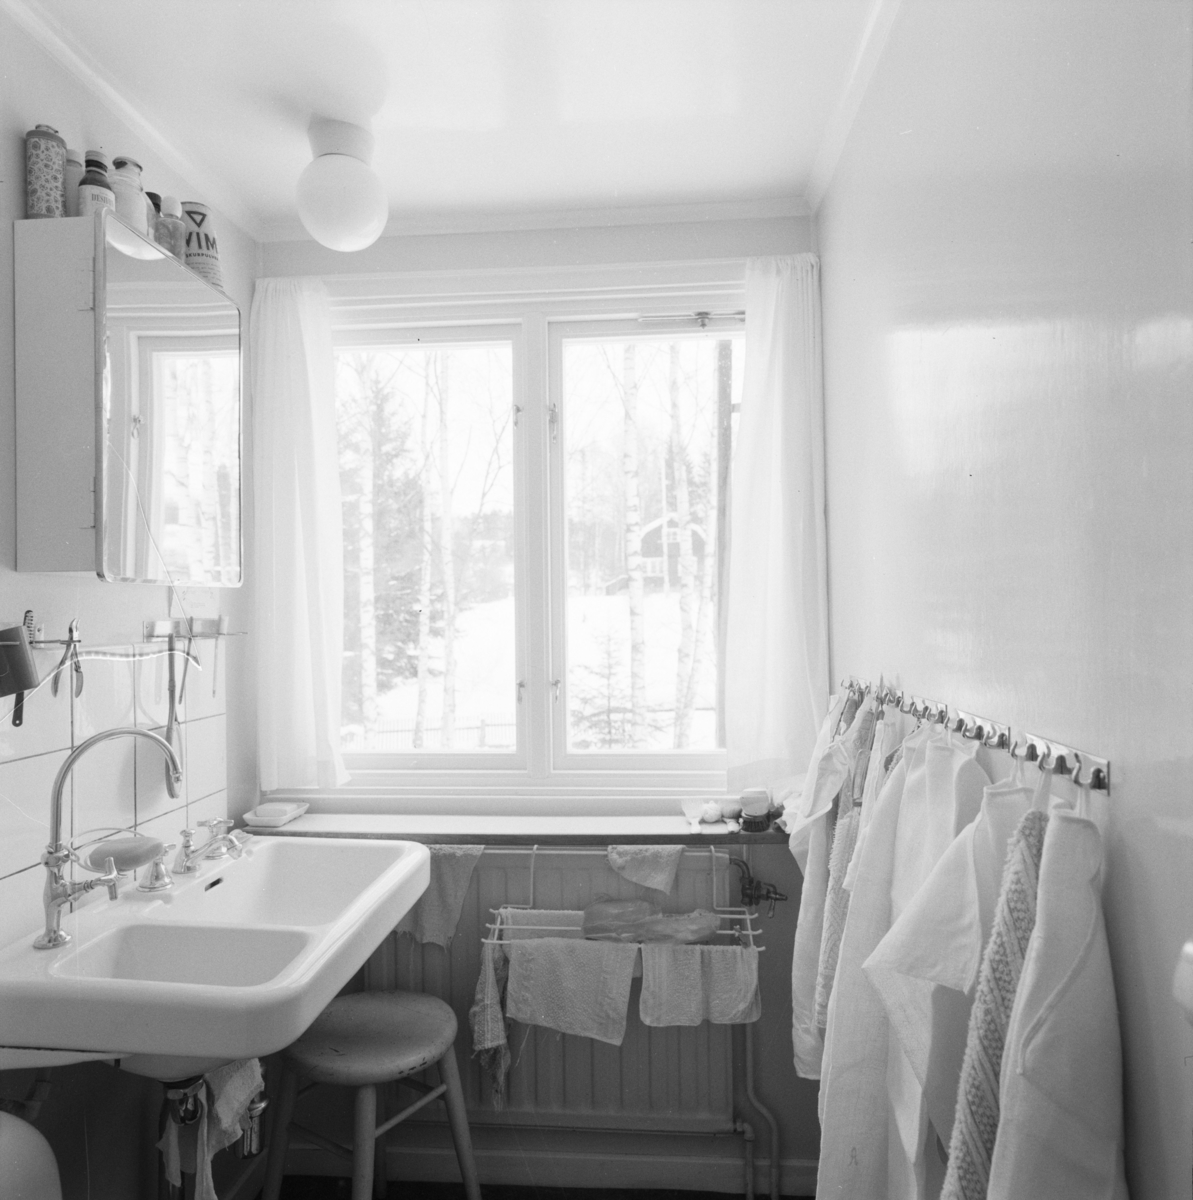 villa Ahlgren
Interiör, tvättrum med handfat vid ljust fönster.